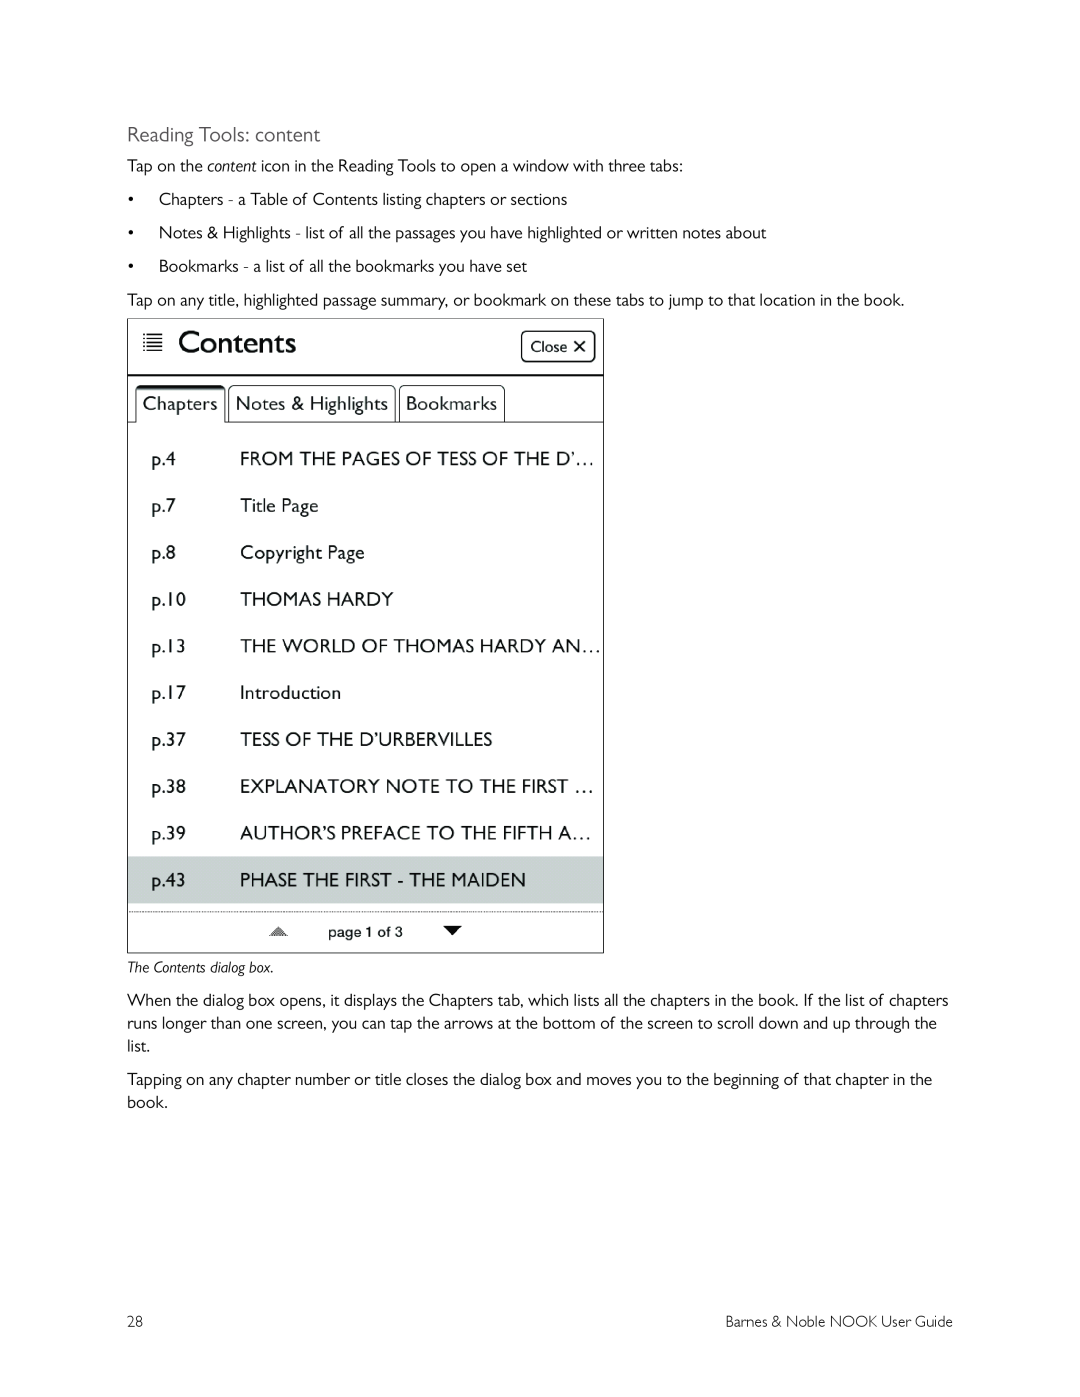 Barnes & Noble BNRV300 manual Reading Tools content 